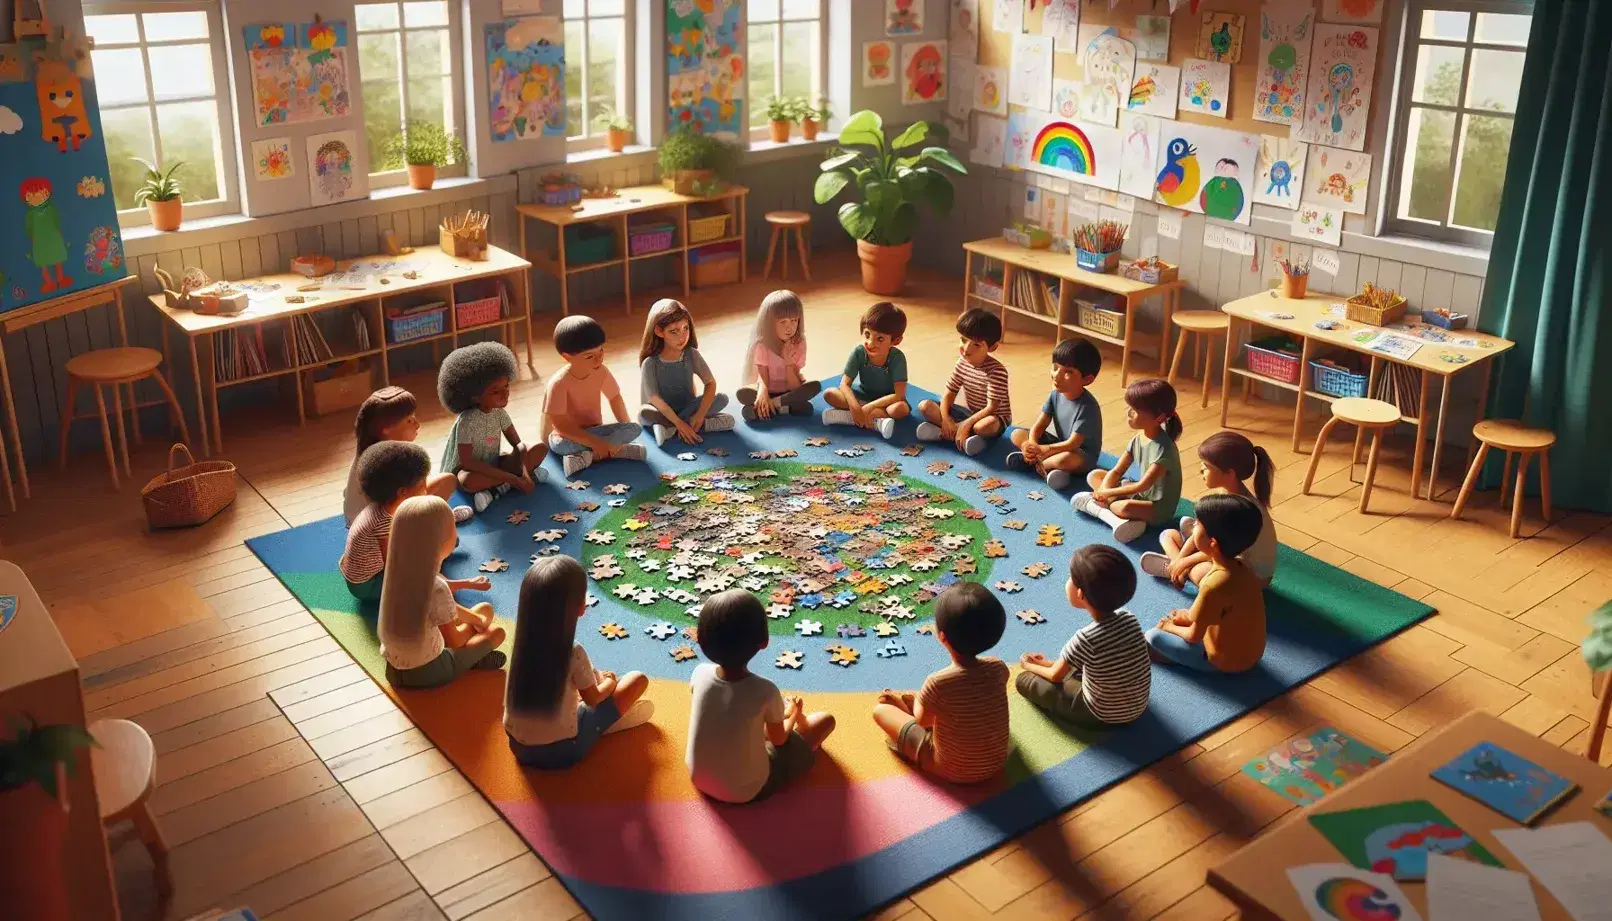 Bambini di diverse etnie collaborano su un puzzle colorato in una luminosa aula scolastica con decorazioni e pianta verde.